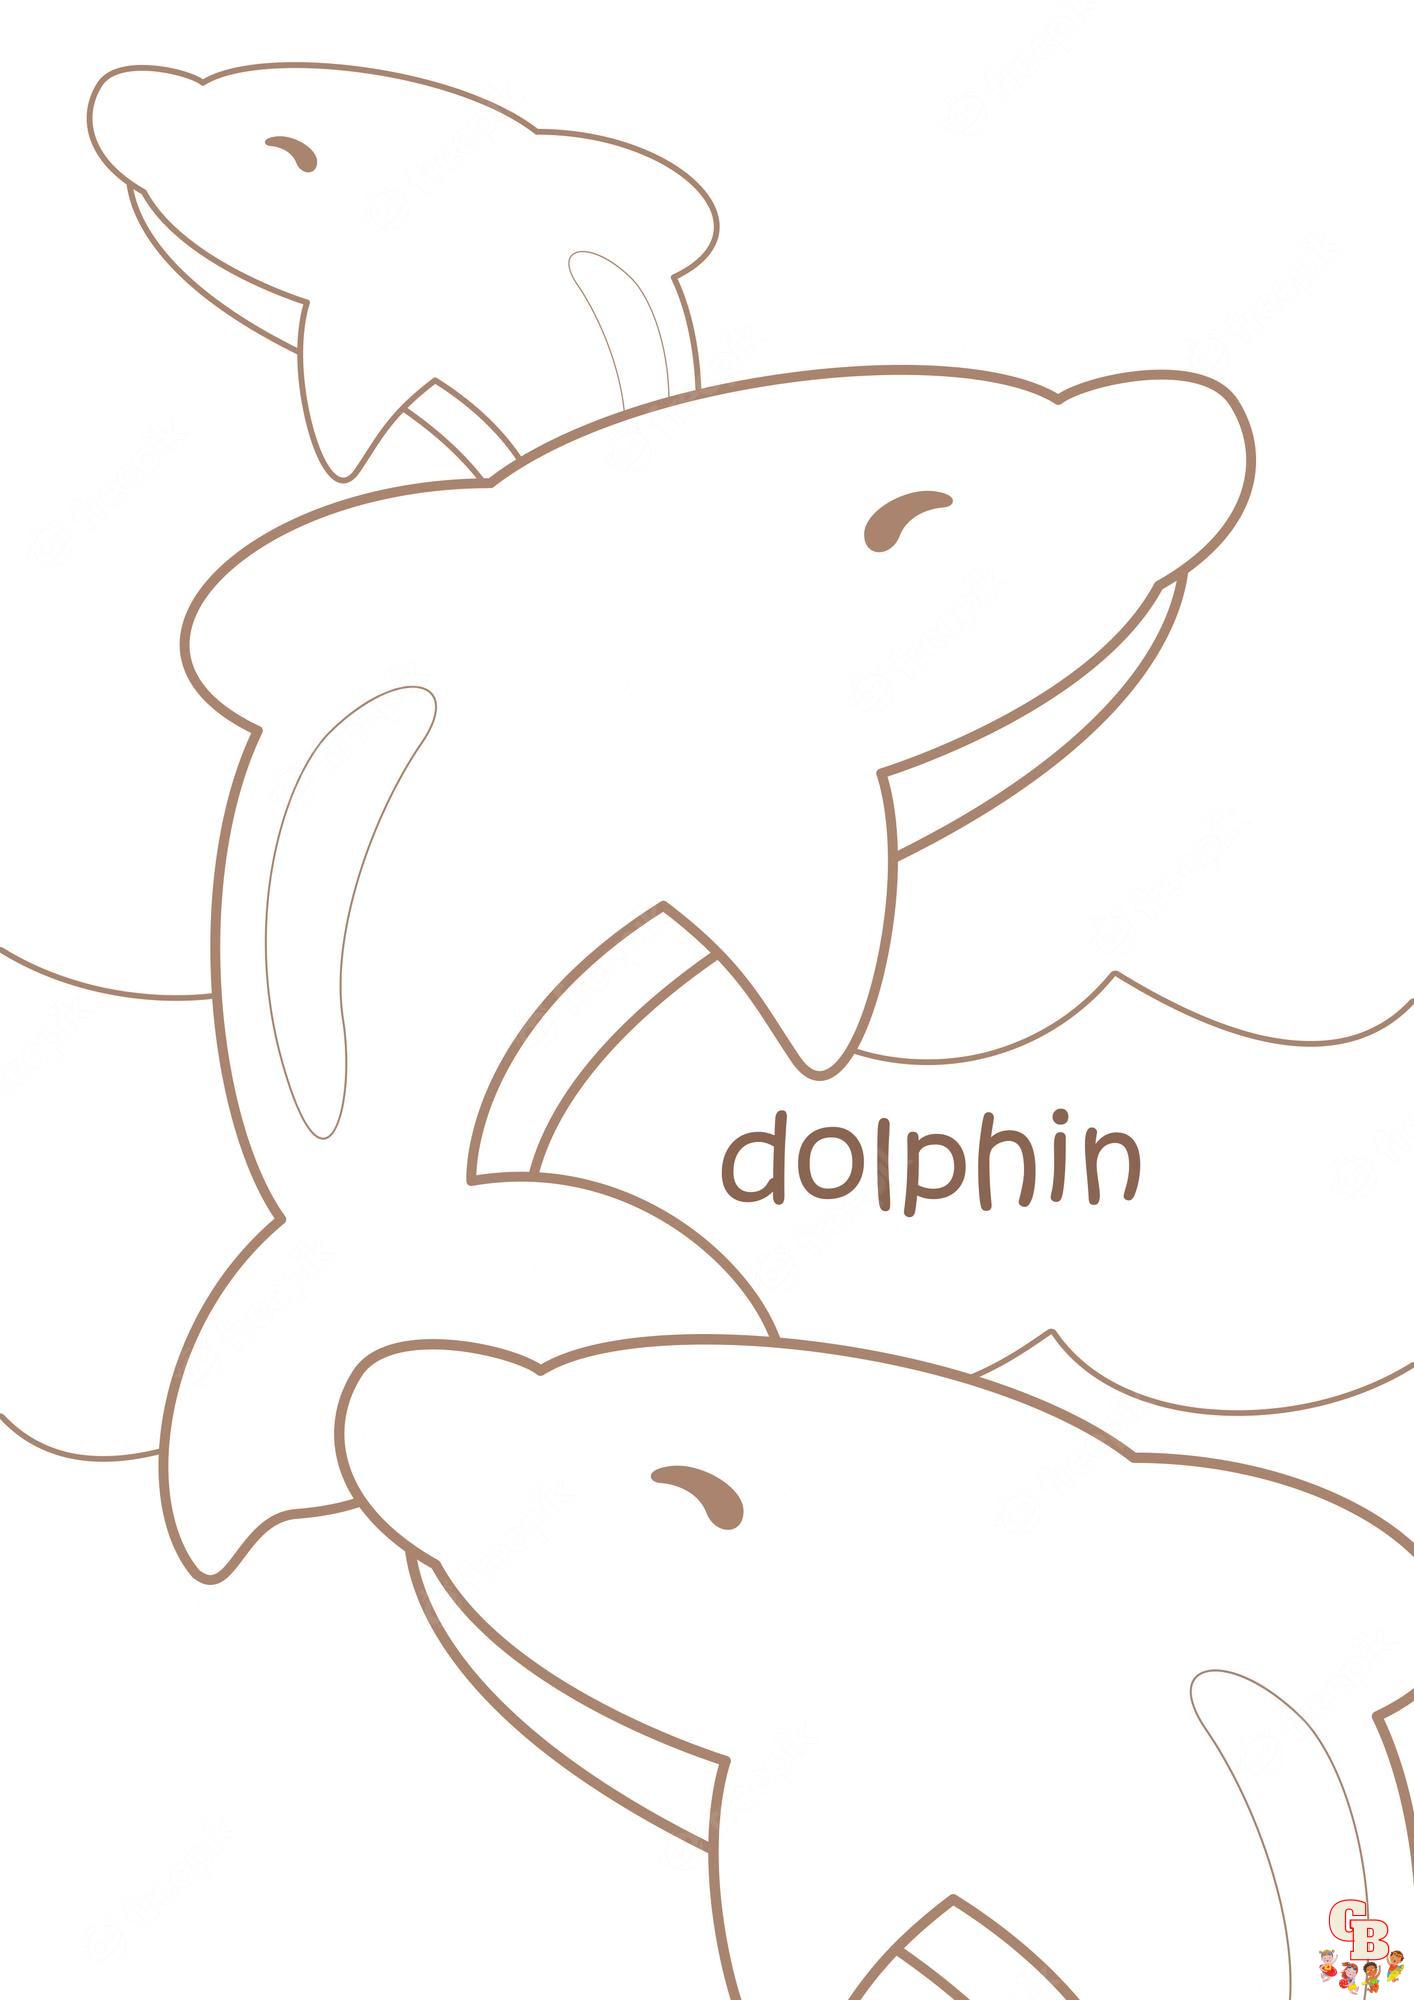 Modelli da colorare di delfini per bambini, adulti e online gratuiti